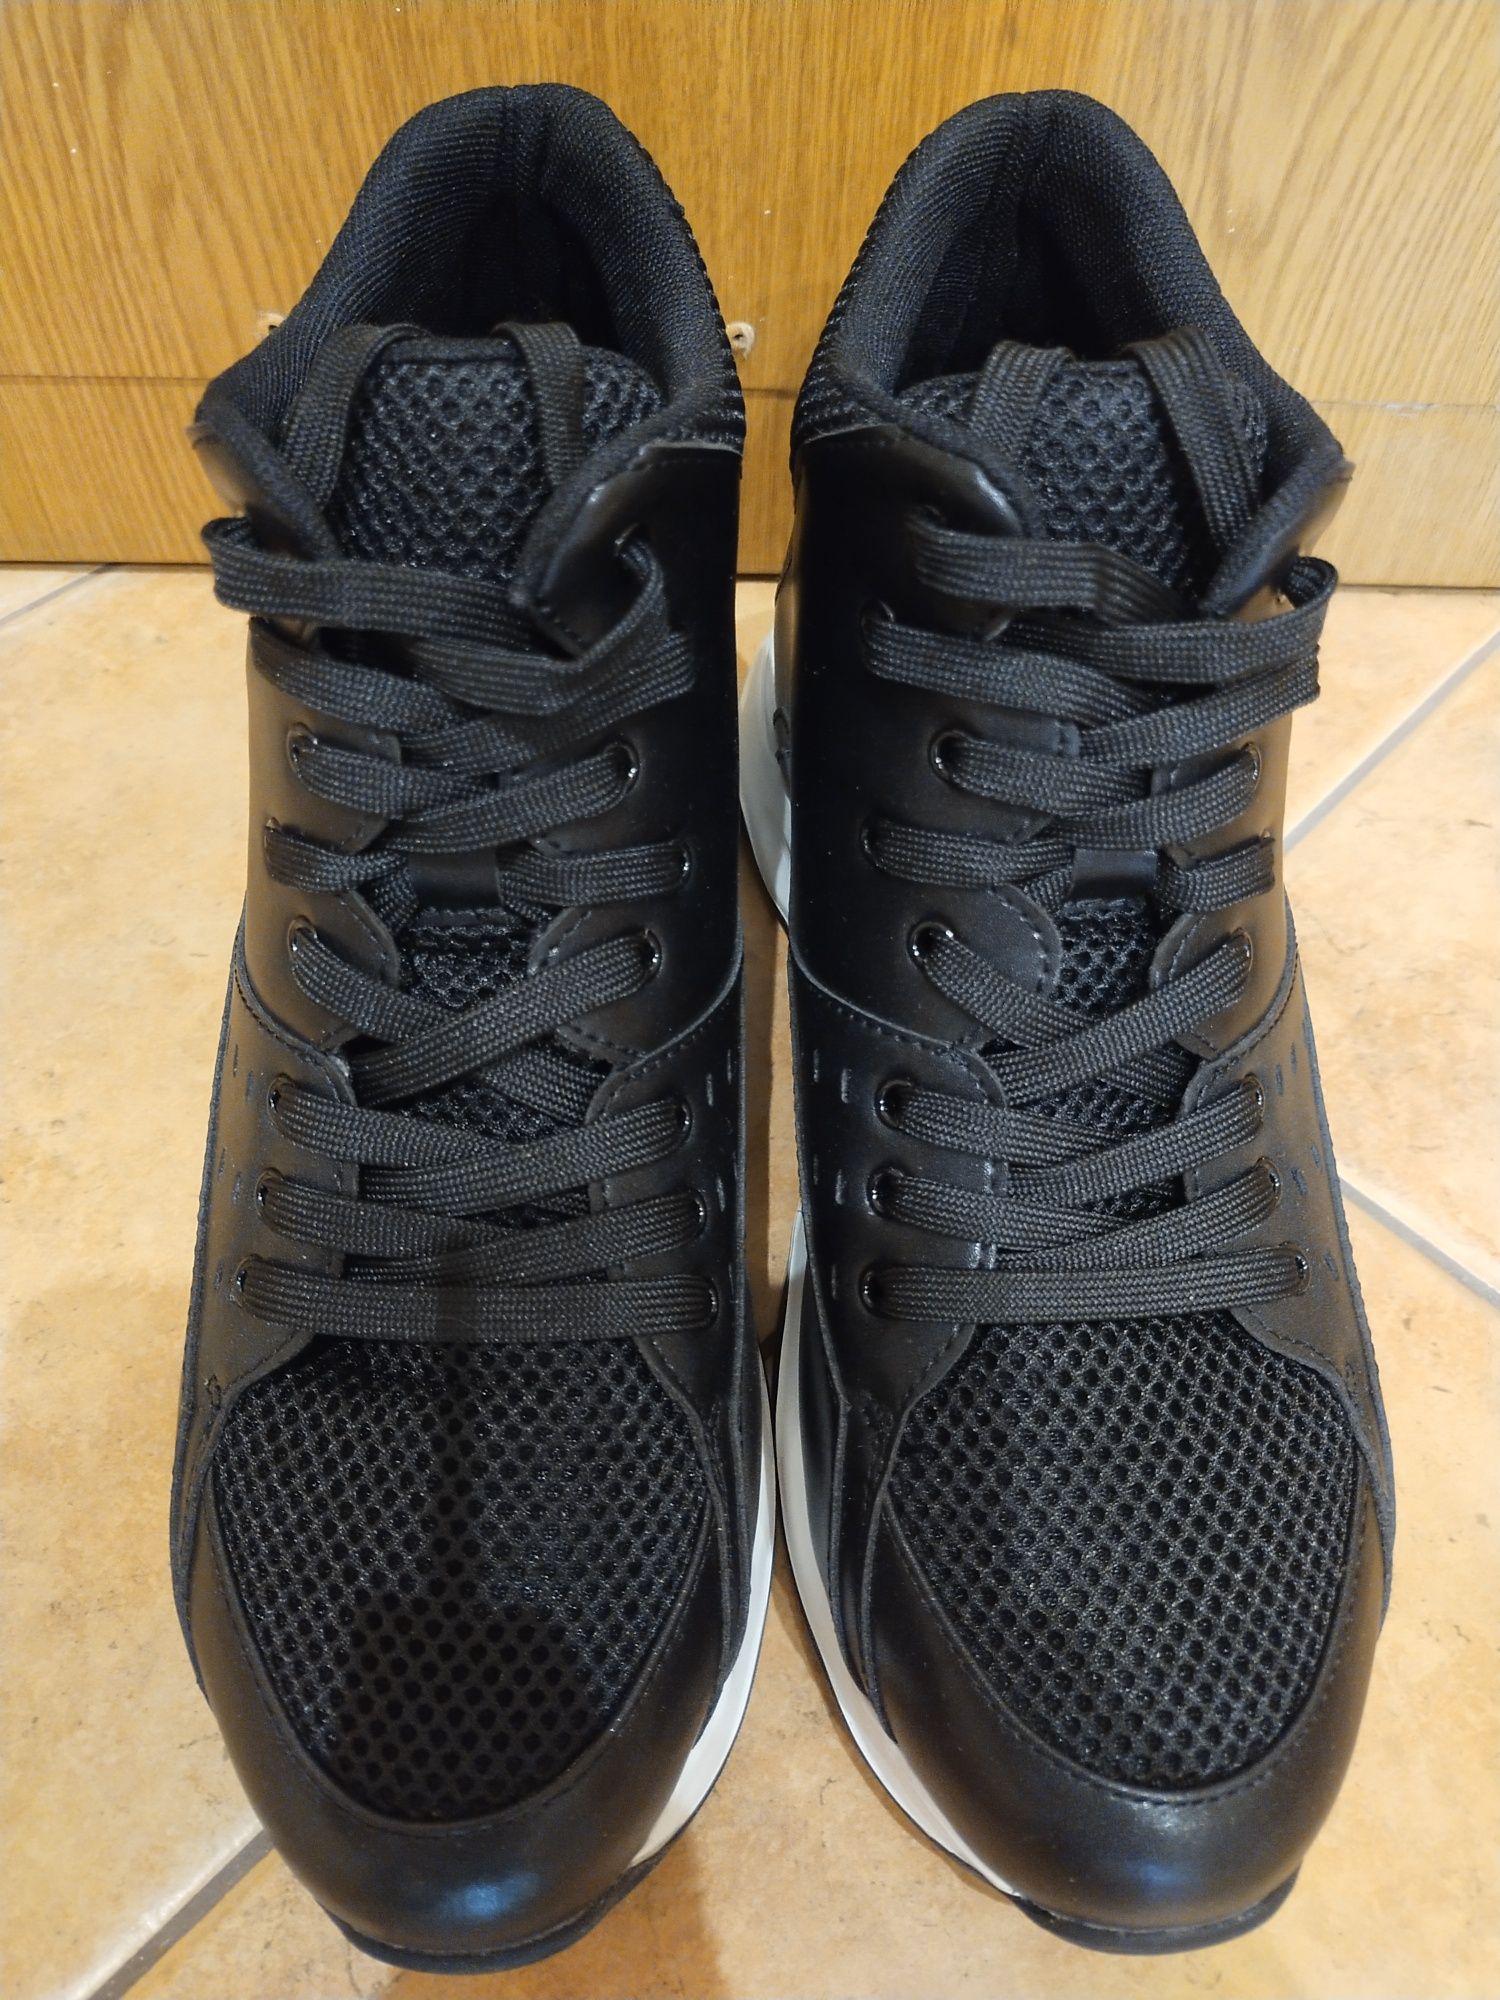 Buty, sneakersy podwyższające CAMILO FARETTI +9,5cm, rozmiar 42